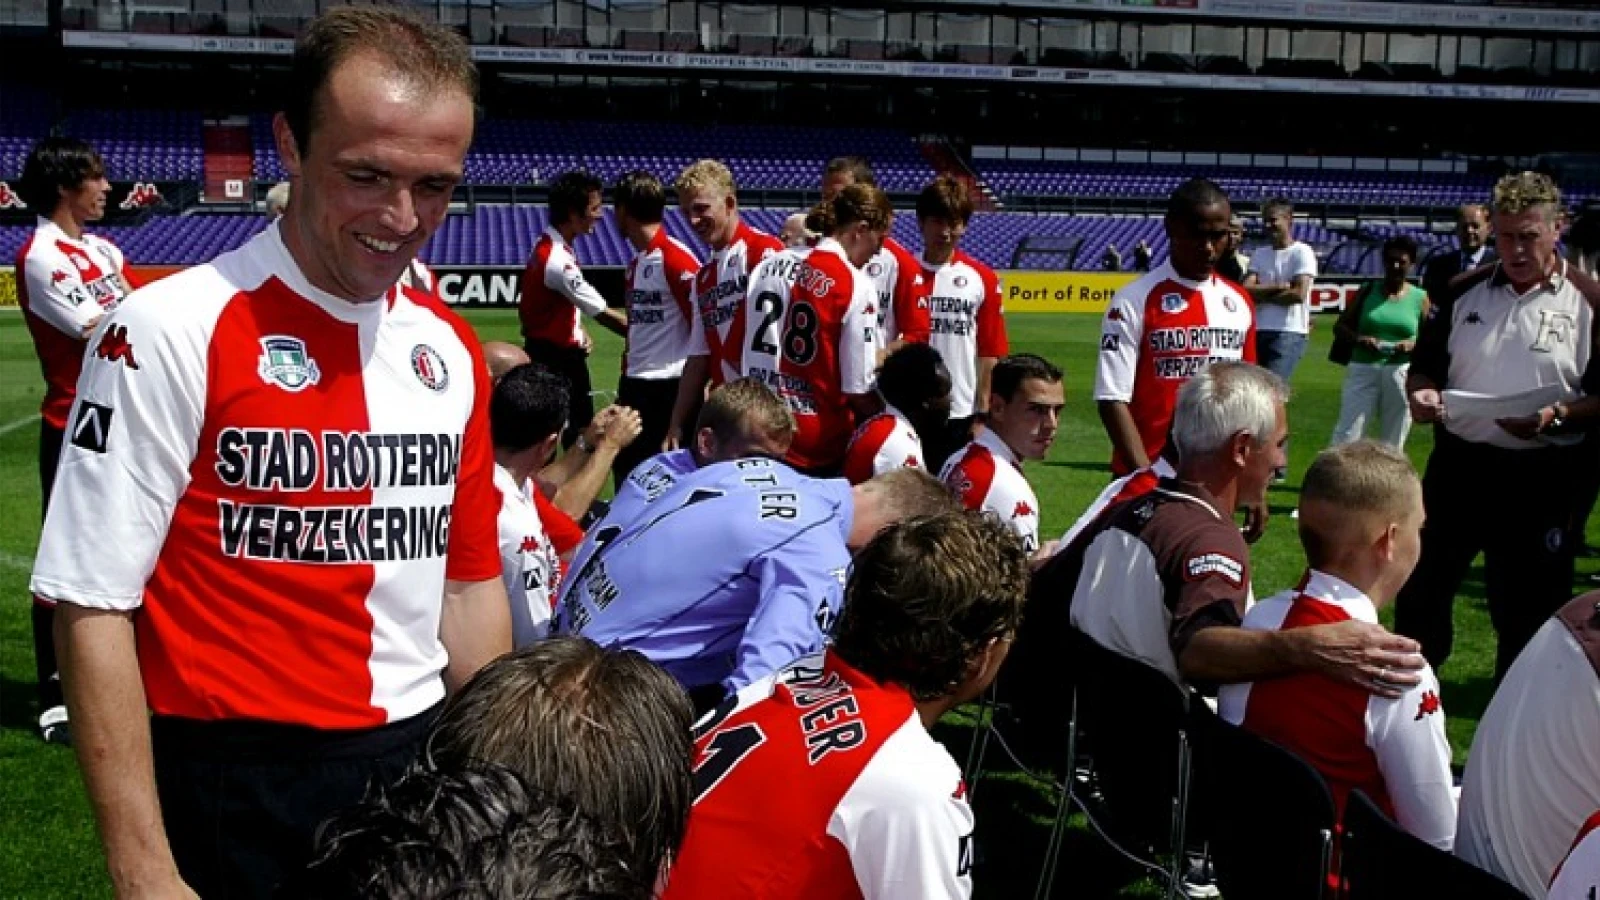 DEFINITIEF | Oud-Feyenoorder nieuwe assistent-trainer bij Ajax